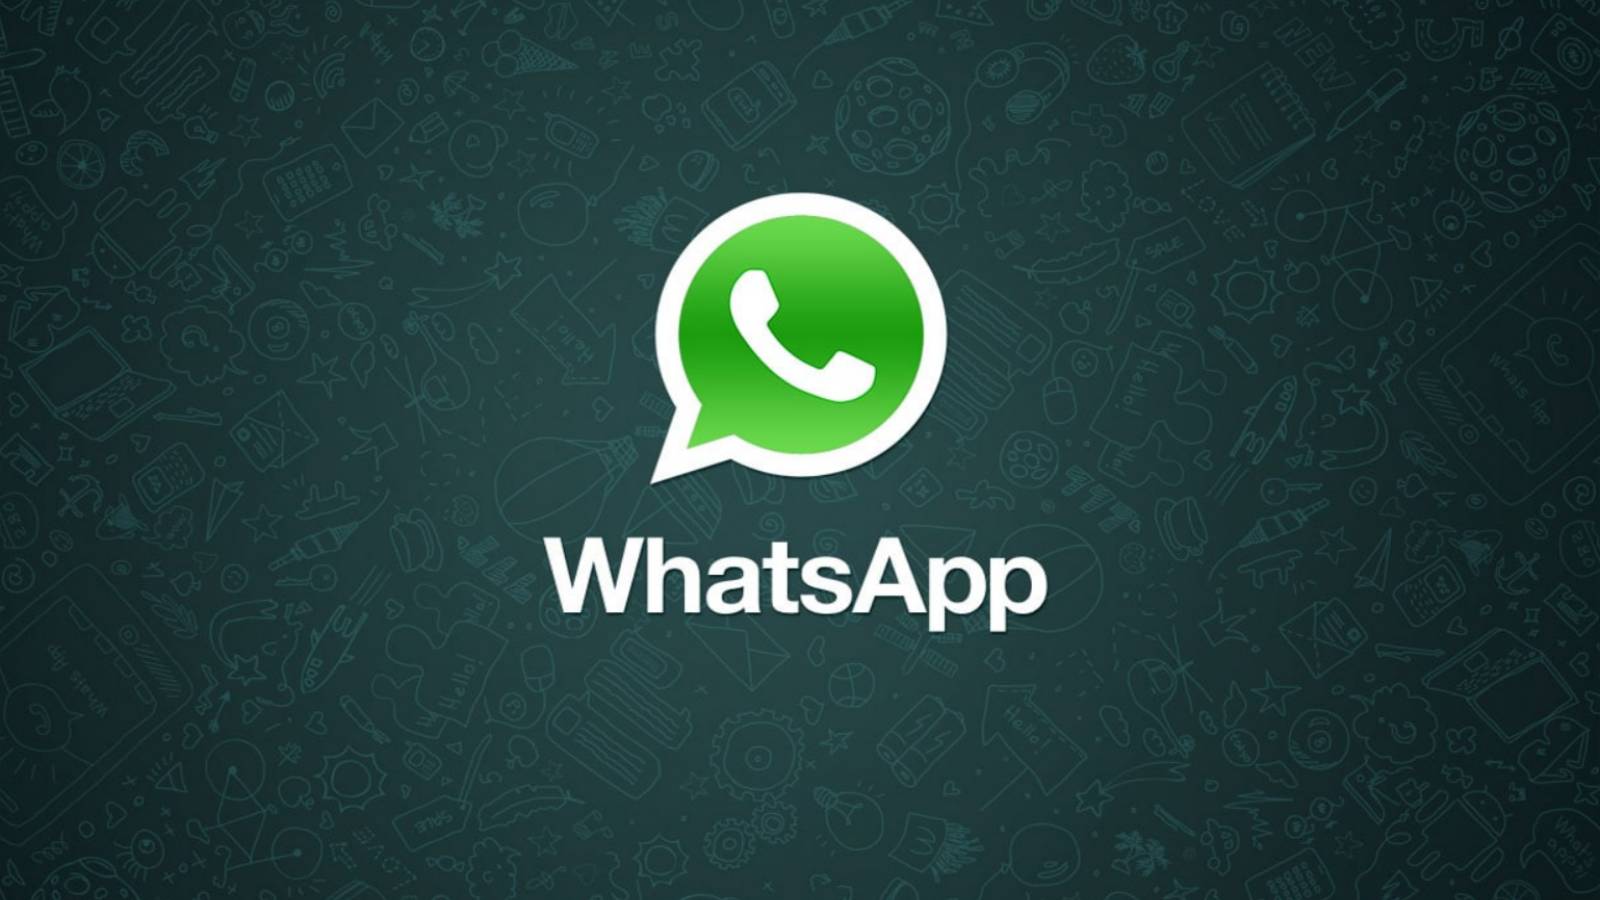 WhatsApp maininta